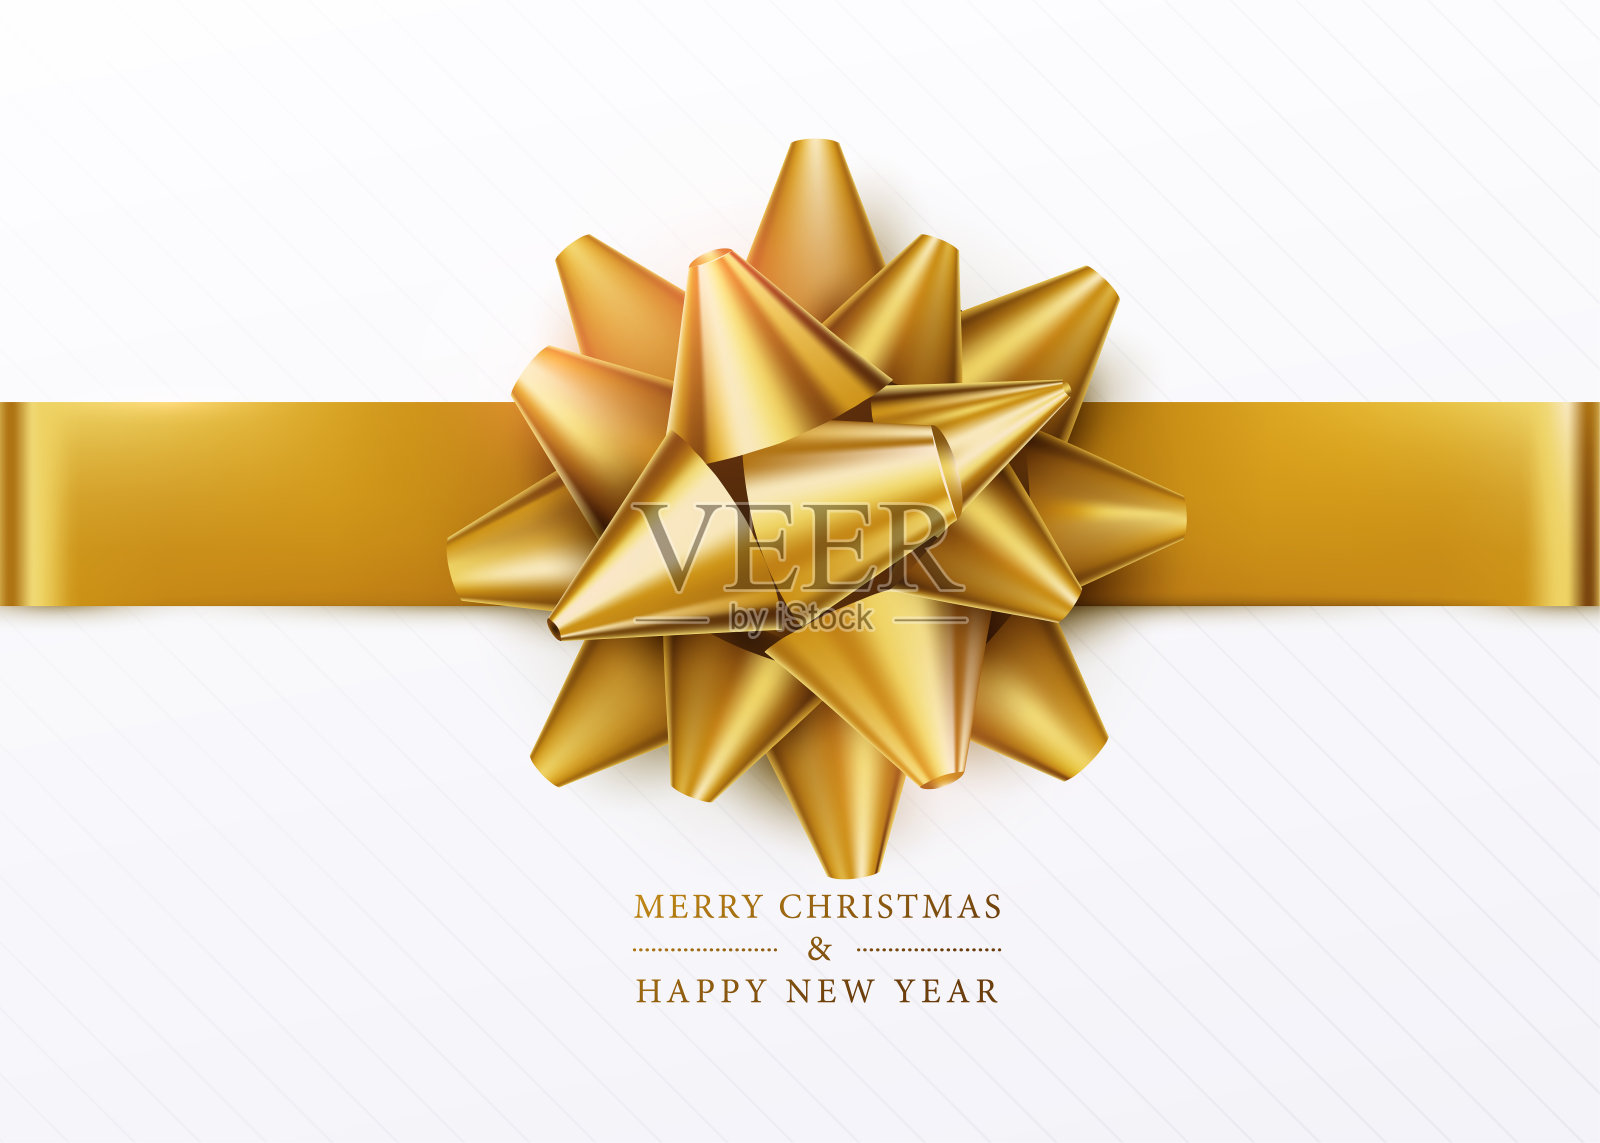 圣诞节的背景。白色礼盒与金色蝴蝶结和水平丝带插画图片素材